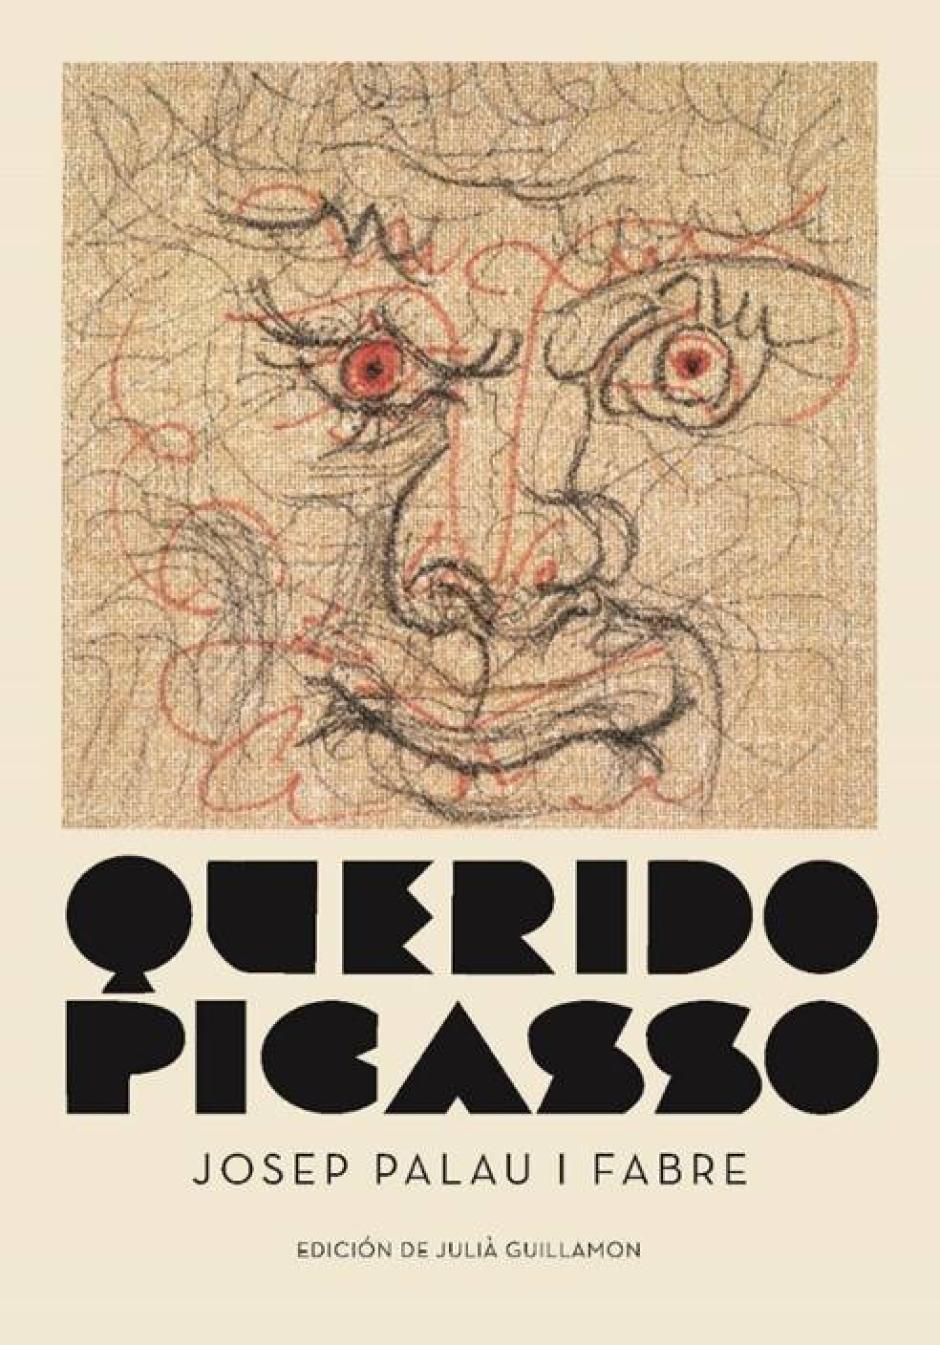 Librerías Picasso on X: Hoy os traemos dos libros imprescindibles para  ayudar a que todas las chicas establezcan una relación sana con su cuerpo,  prevenir problemas y saber todo lo necesario sobre